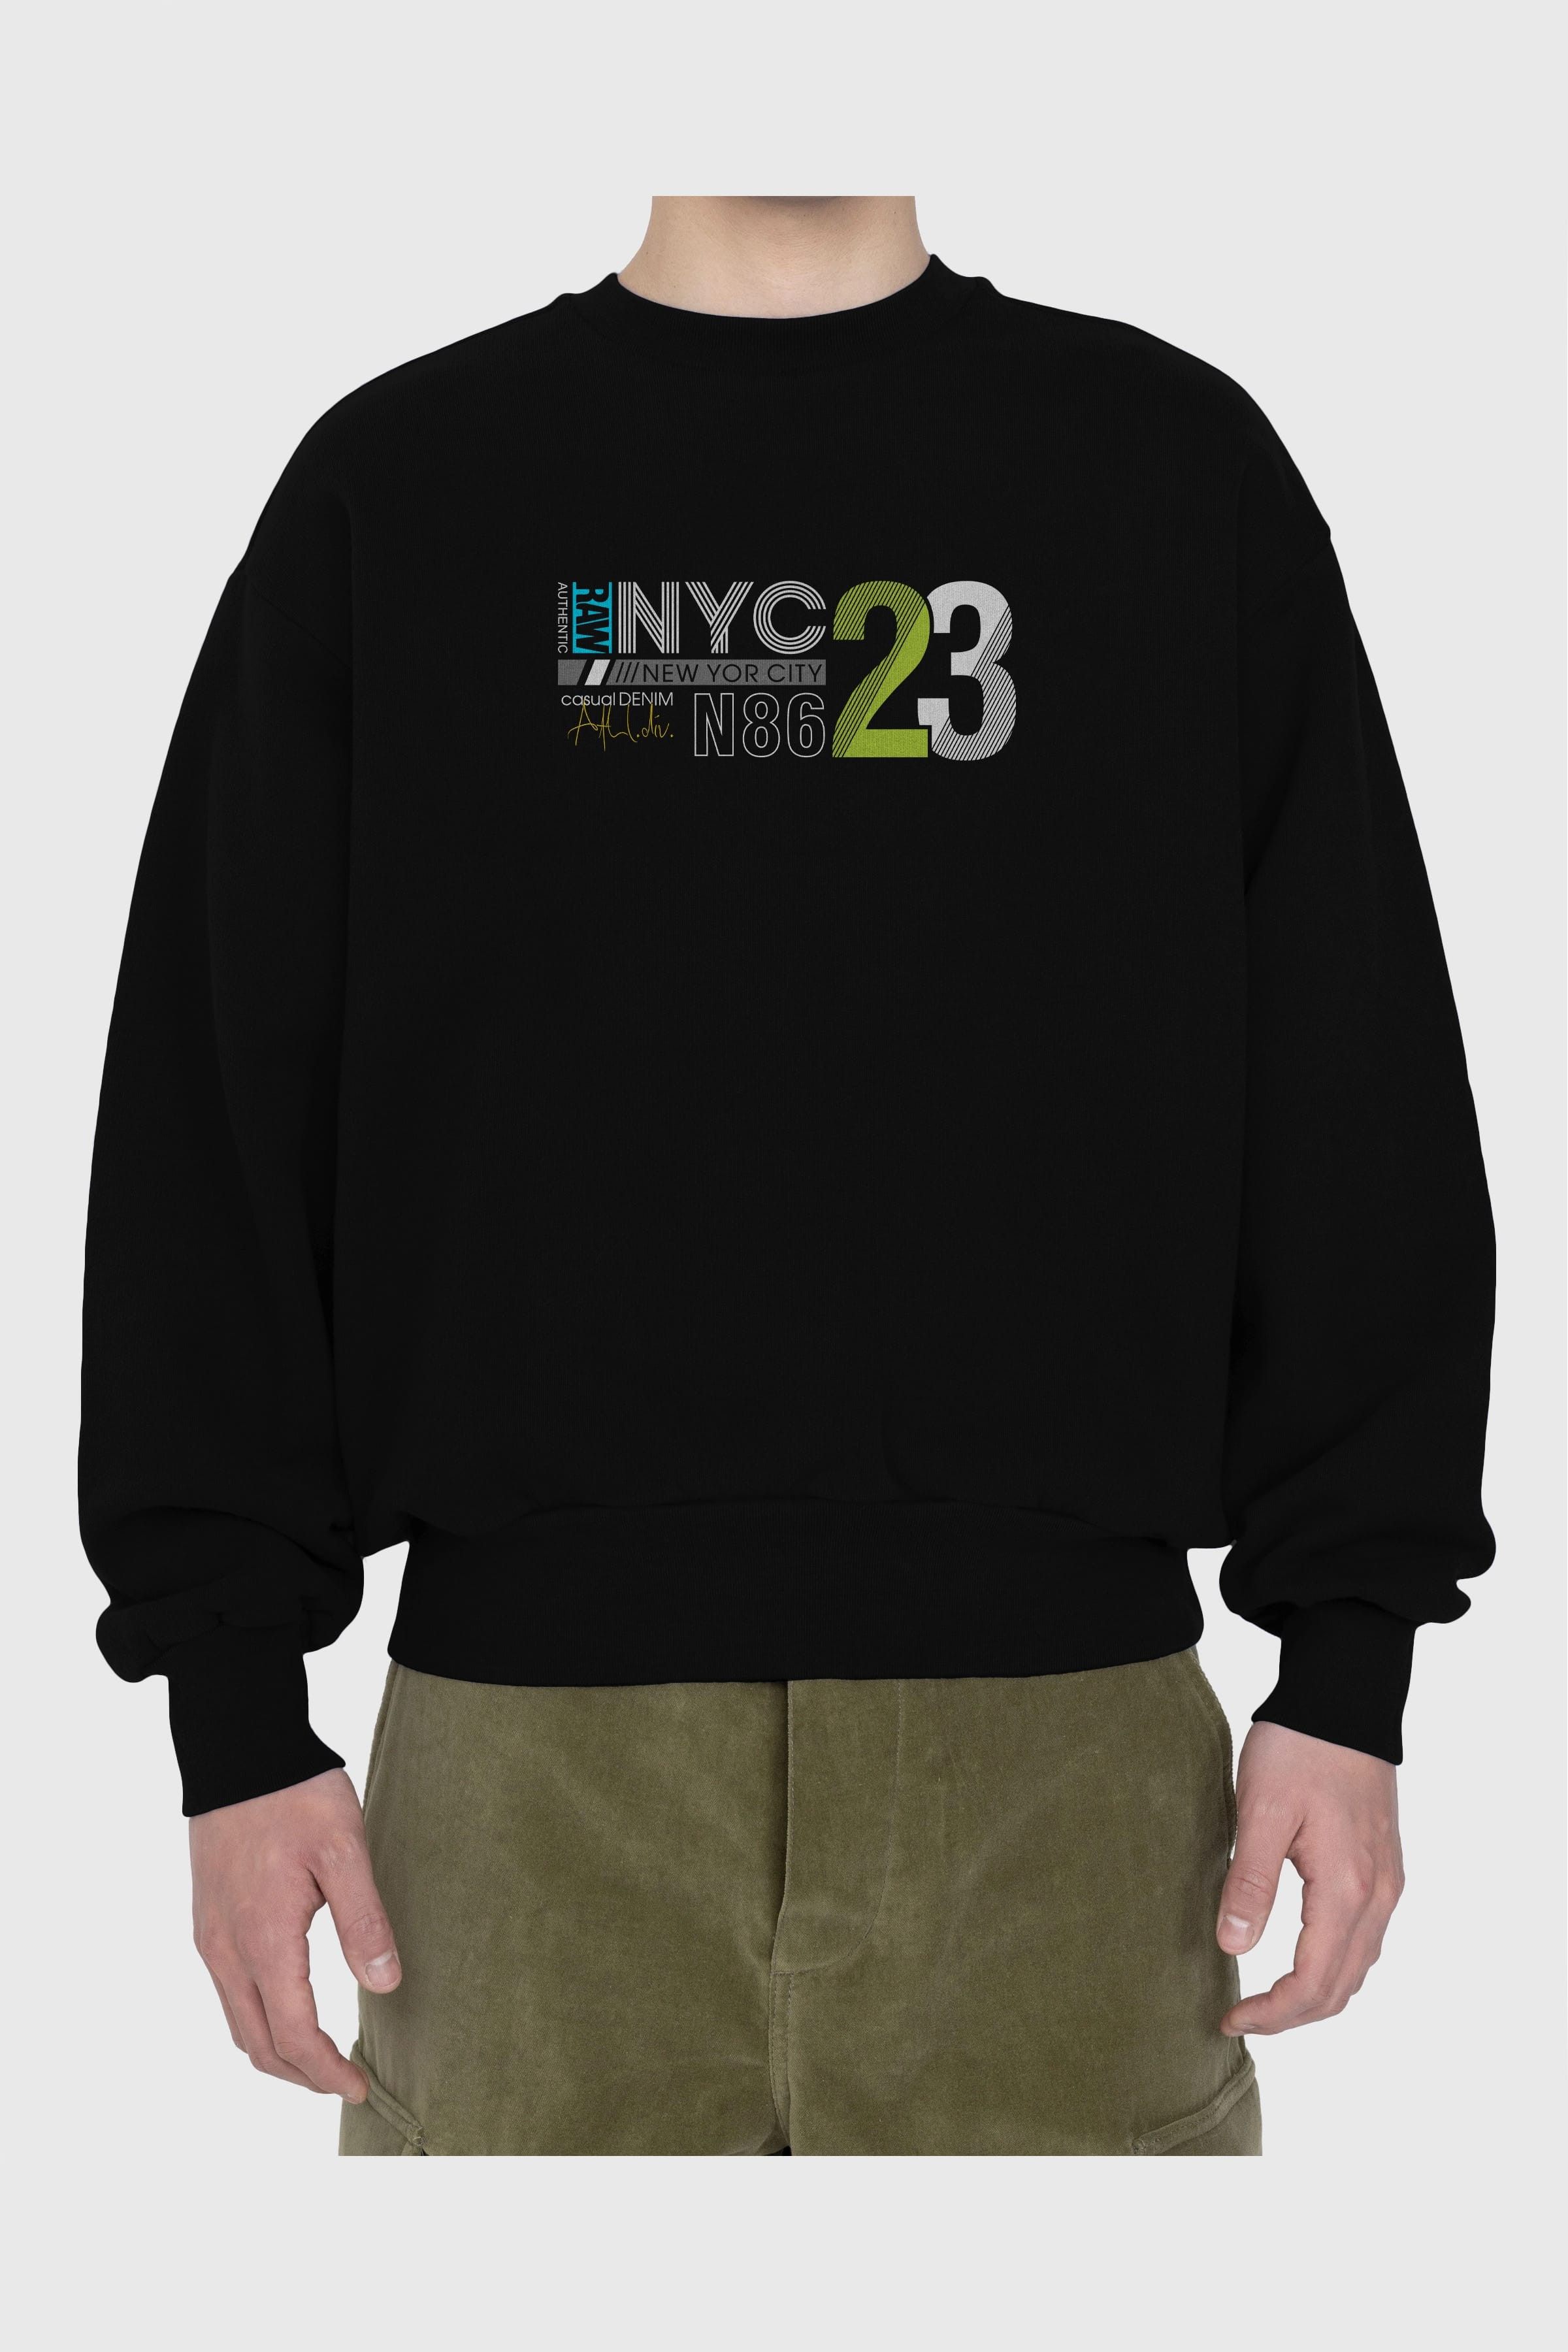 NYC 23 Ön Baskılı Oversize Sweatshirt Erkek Kadın Unisex